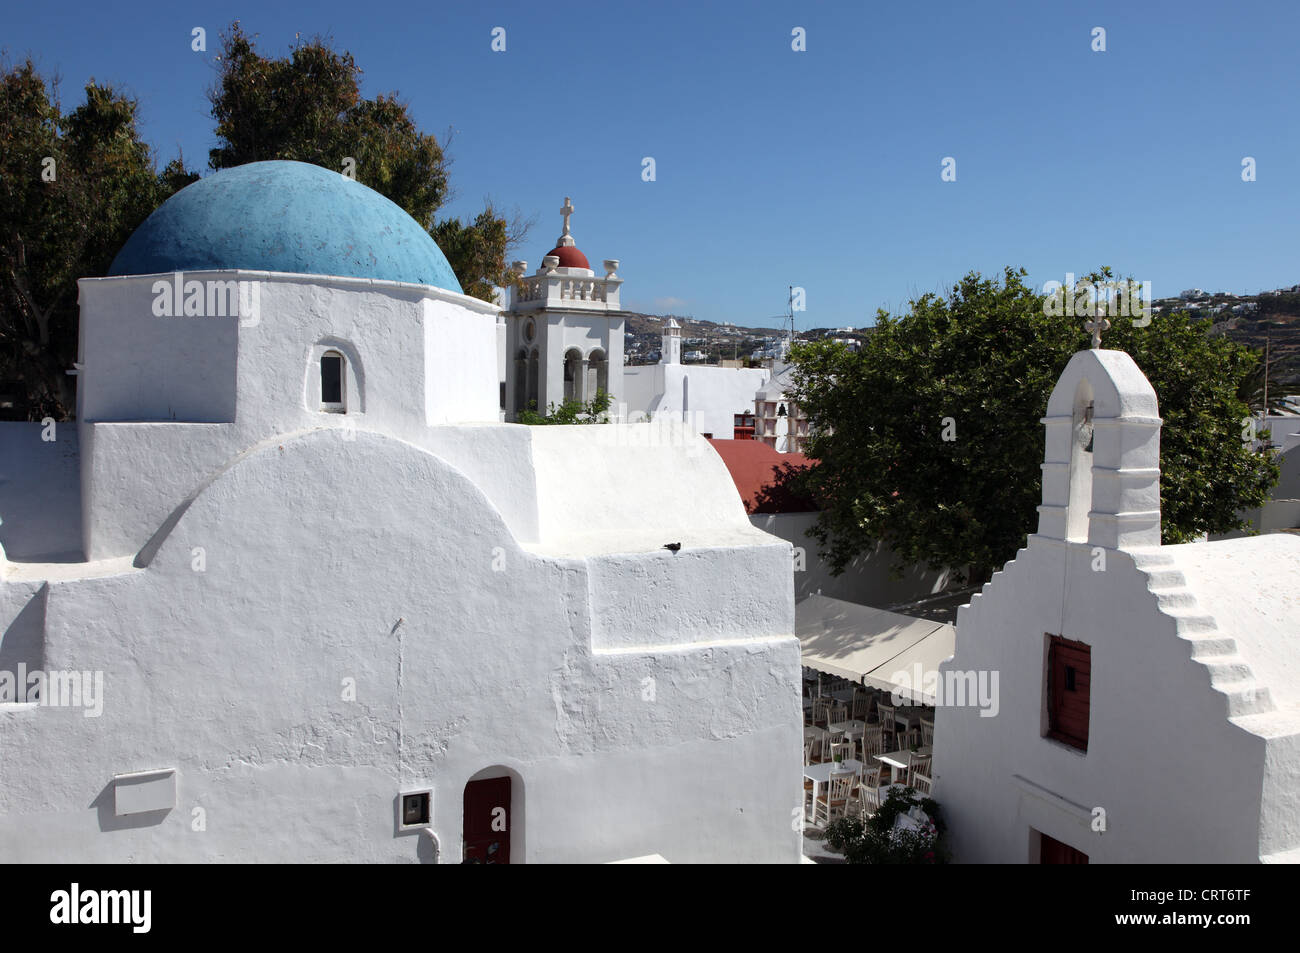 Chiese tradizionali sull'isola greca di Mykonos Foto Stock